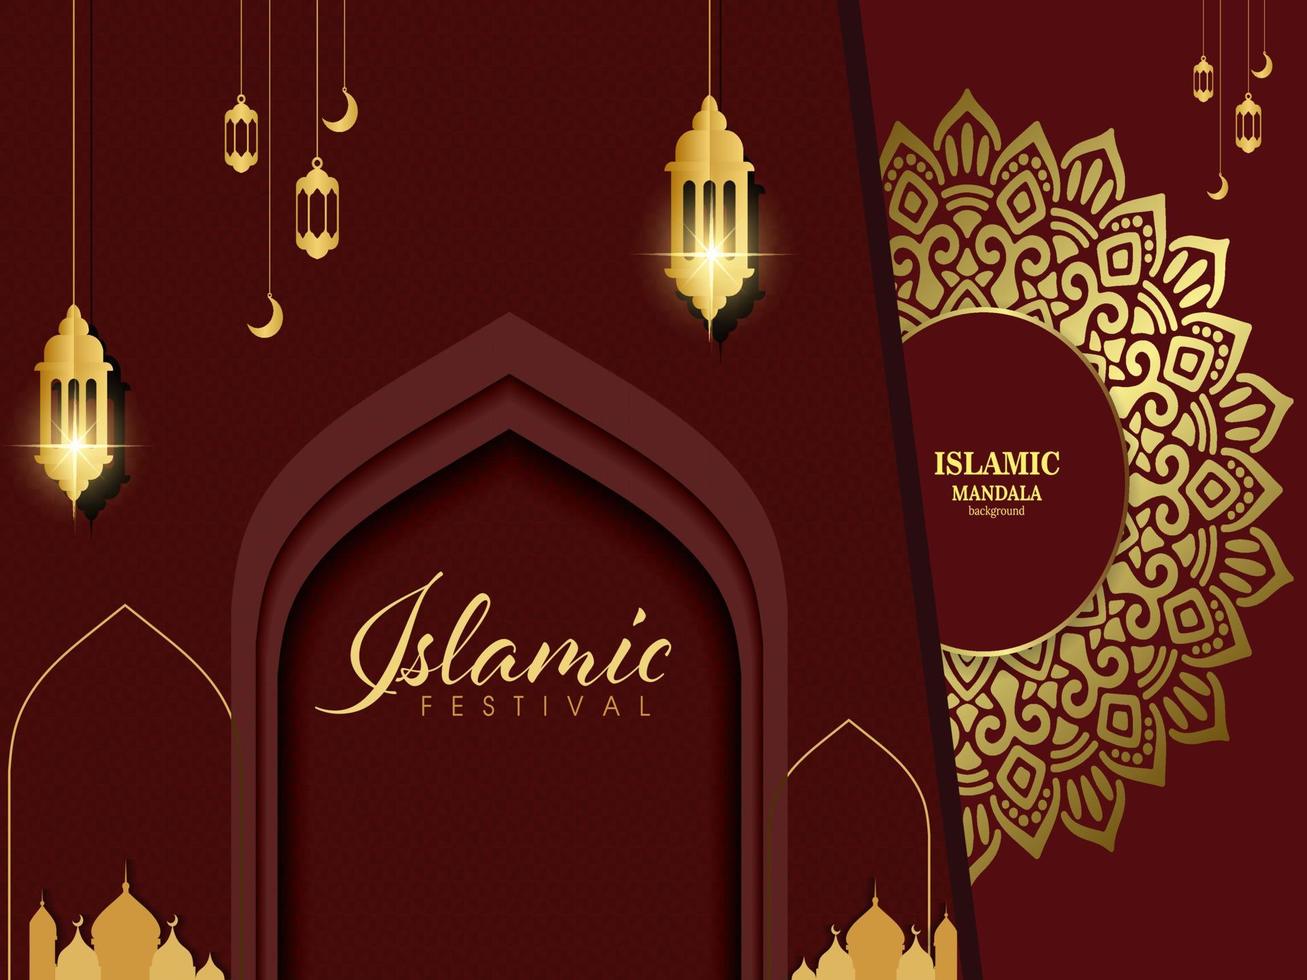 conception de carte de voeux de ramadan kareem avec calligraphie islamique d'art de mandala, affiche islamique de ramadan 'arrière-plan de ramadan kareem avec de belles lanternes mineur de mosquée et bannière arabe islamique. vecteur